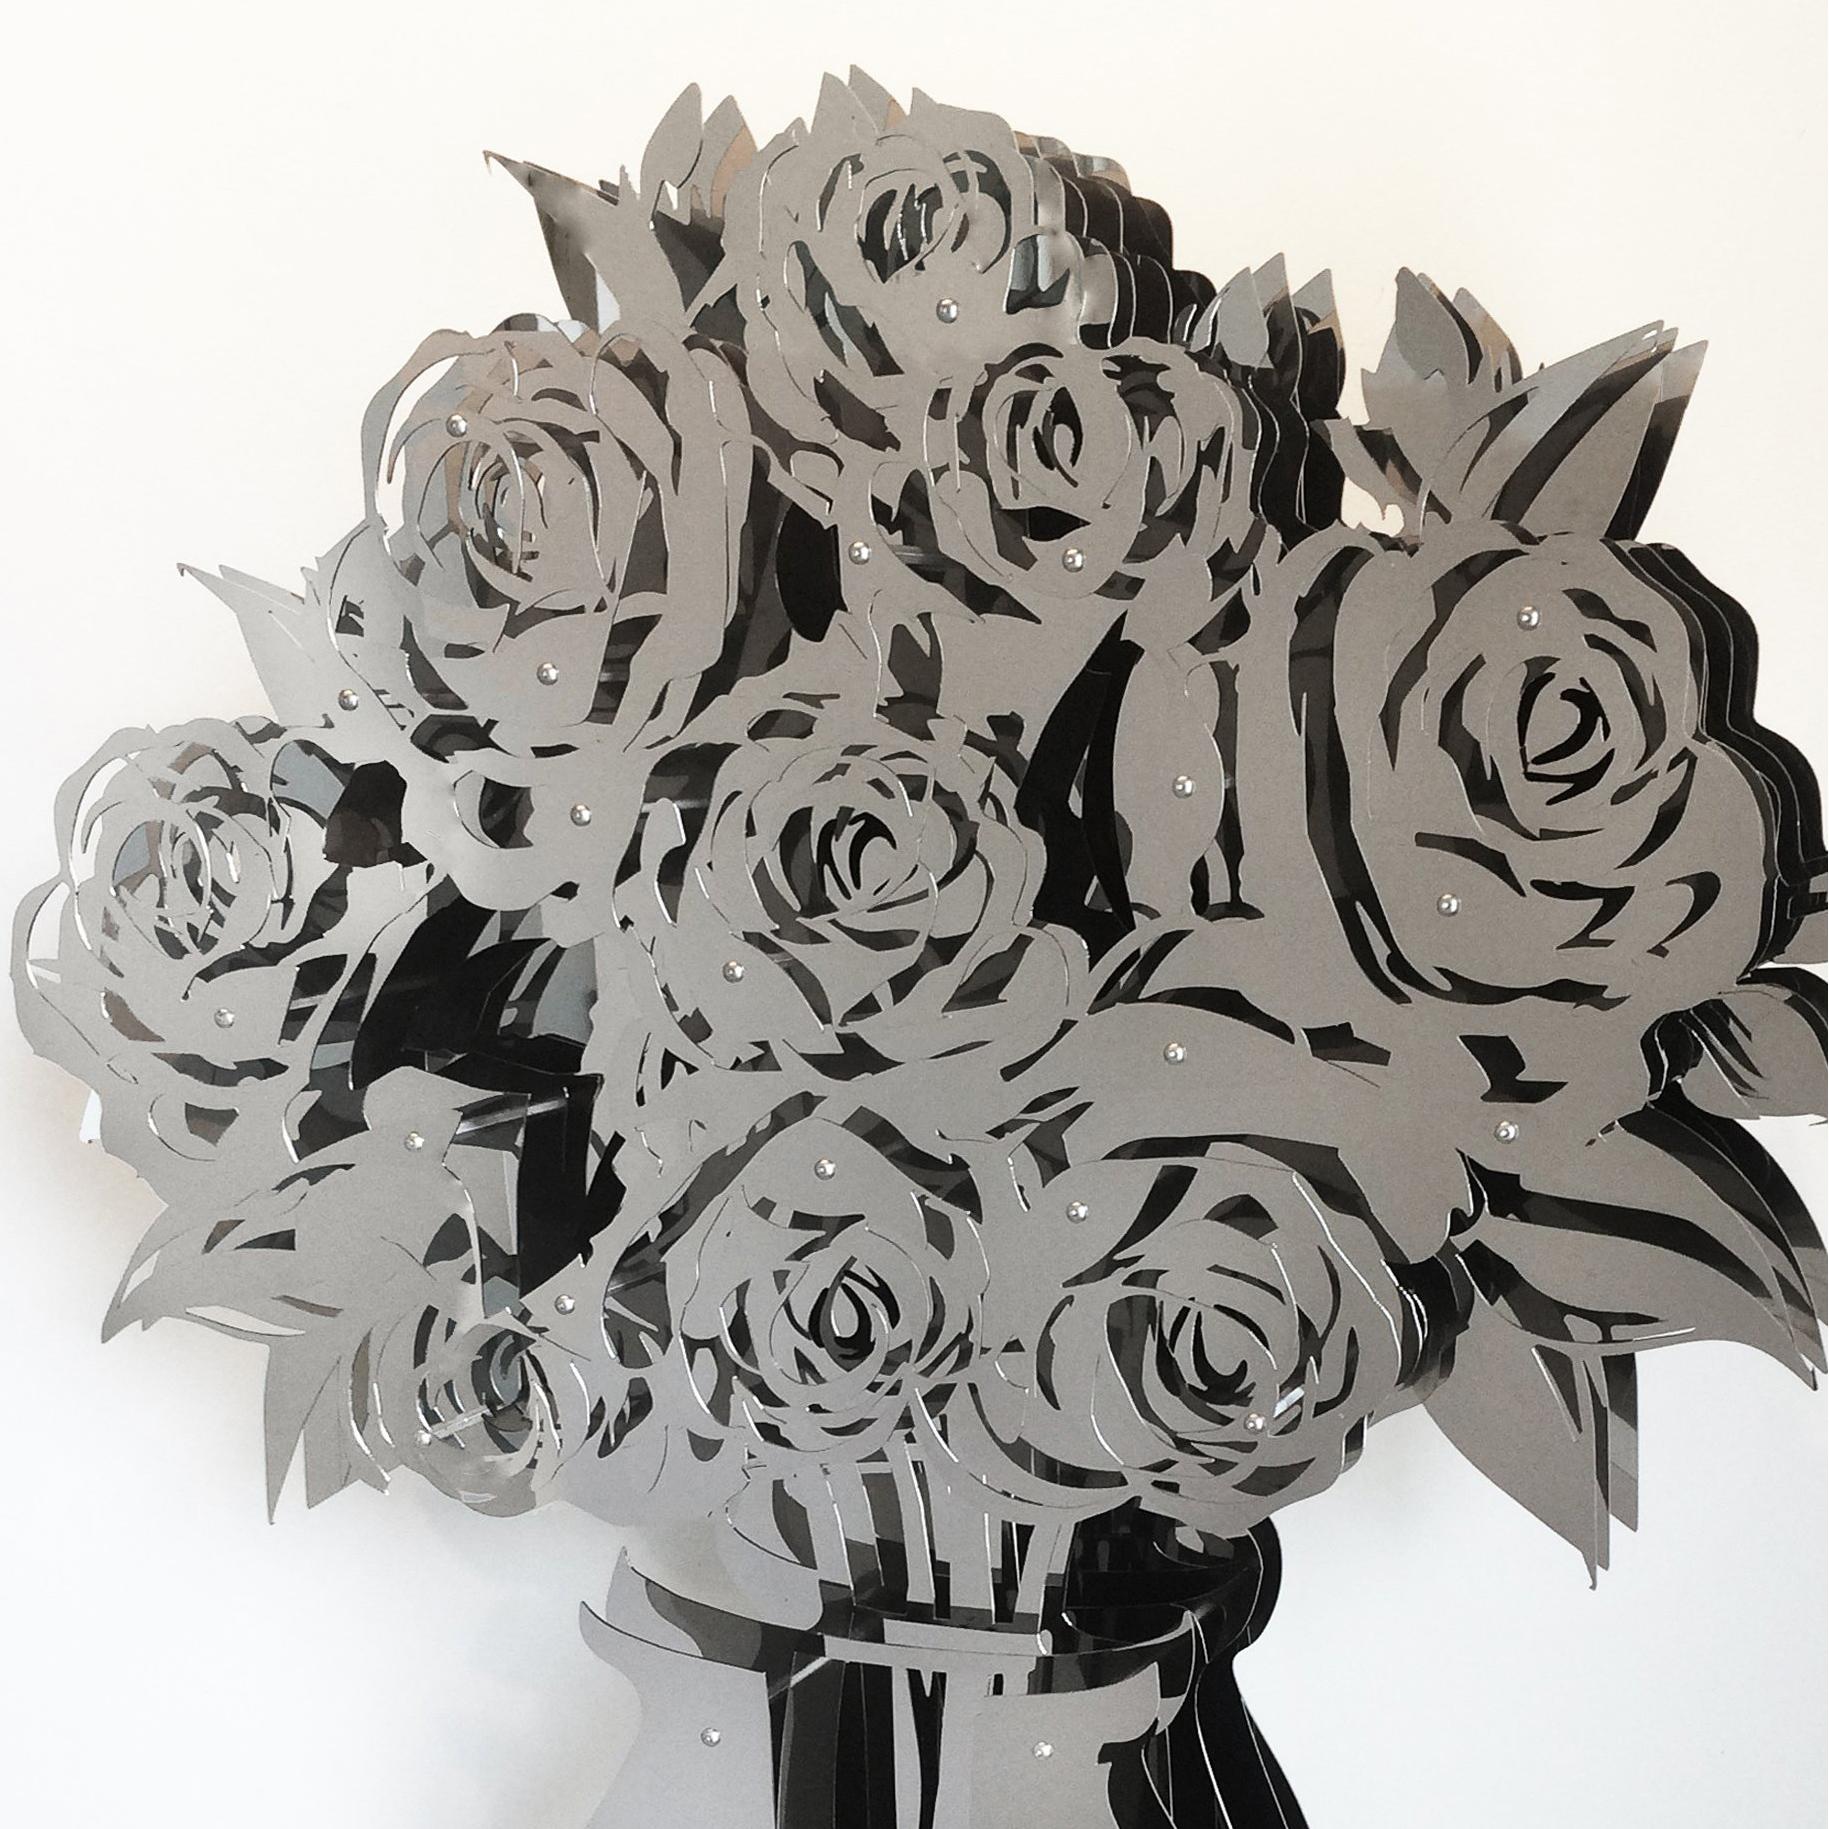 Vase mit Rosen – verspiegelt, Edelstahl 60 (Grau), Abstract Sculpture, von Michael Kalish